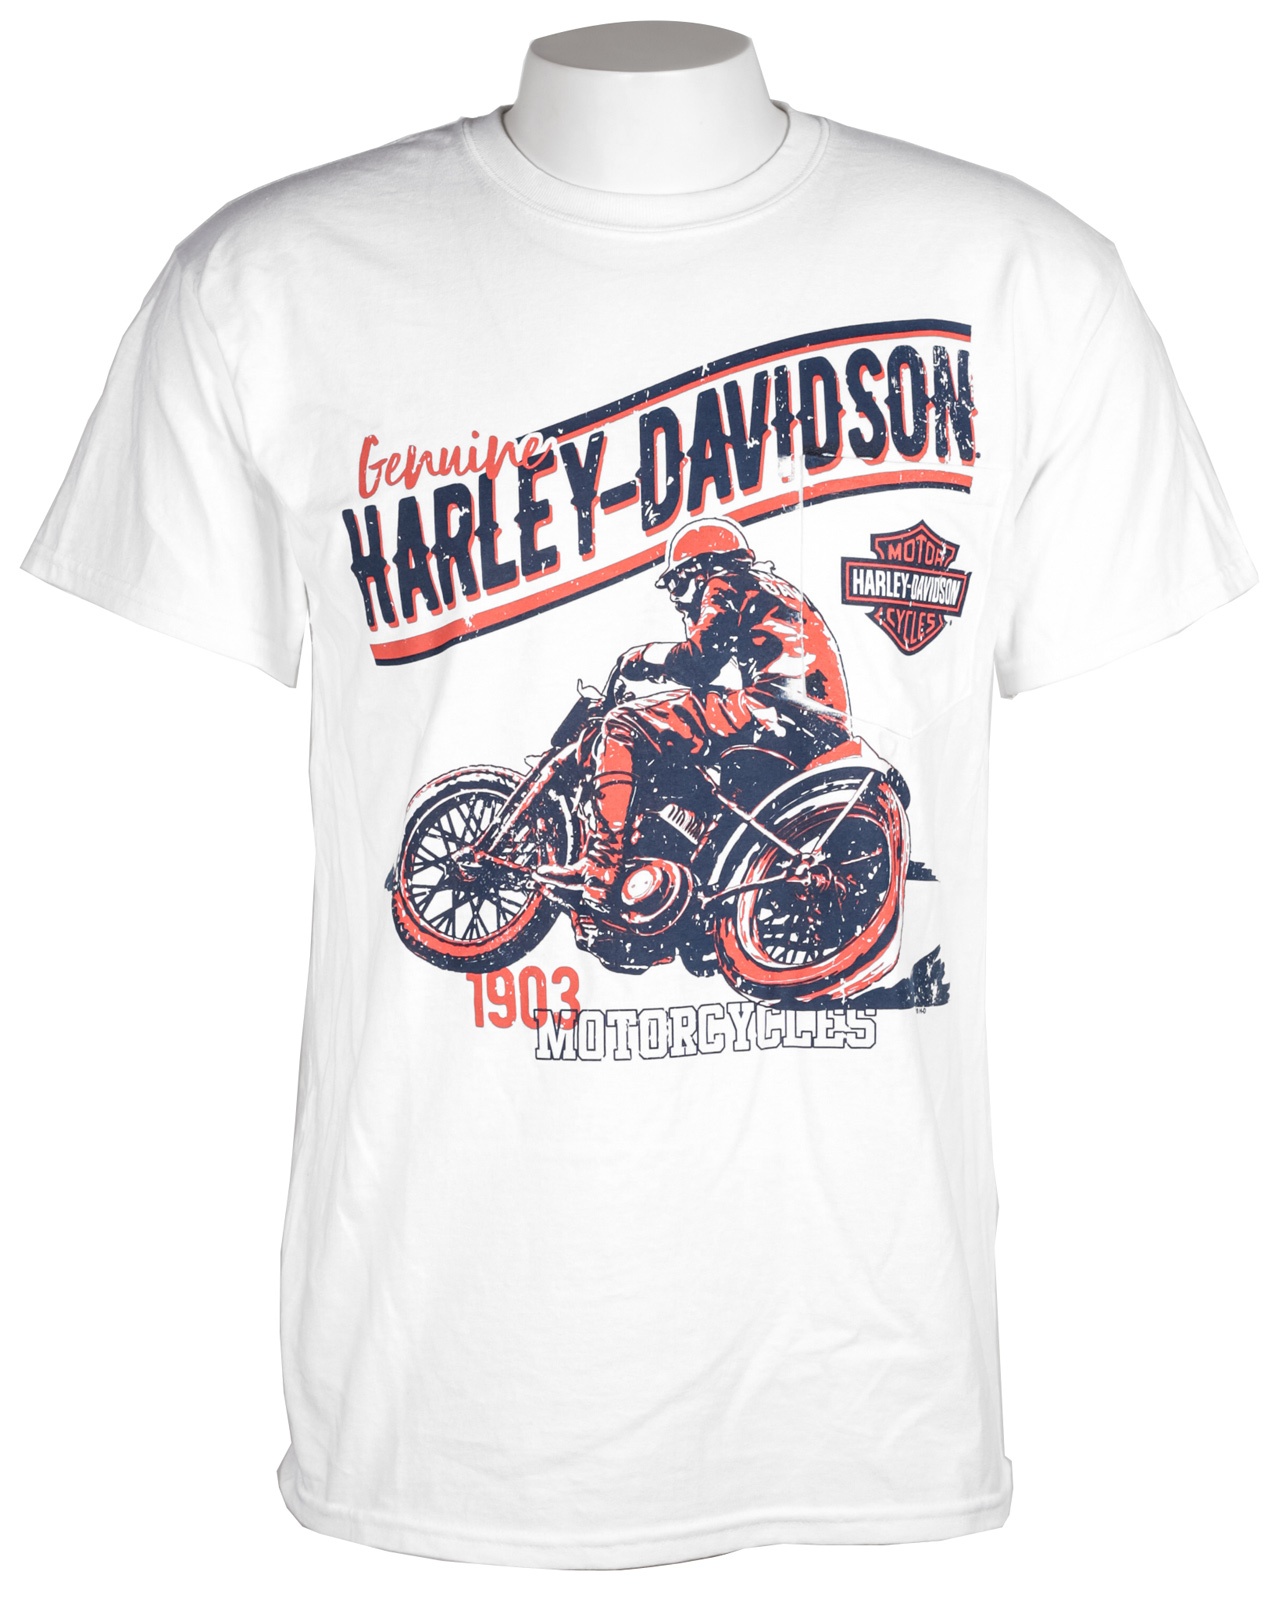 Buy Harley Davidson T Shirt Promotion Off66